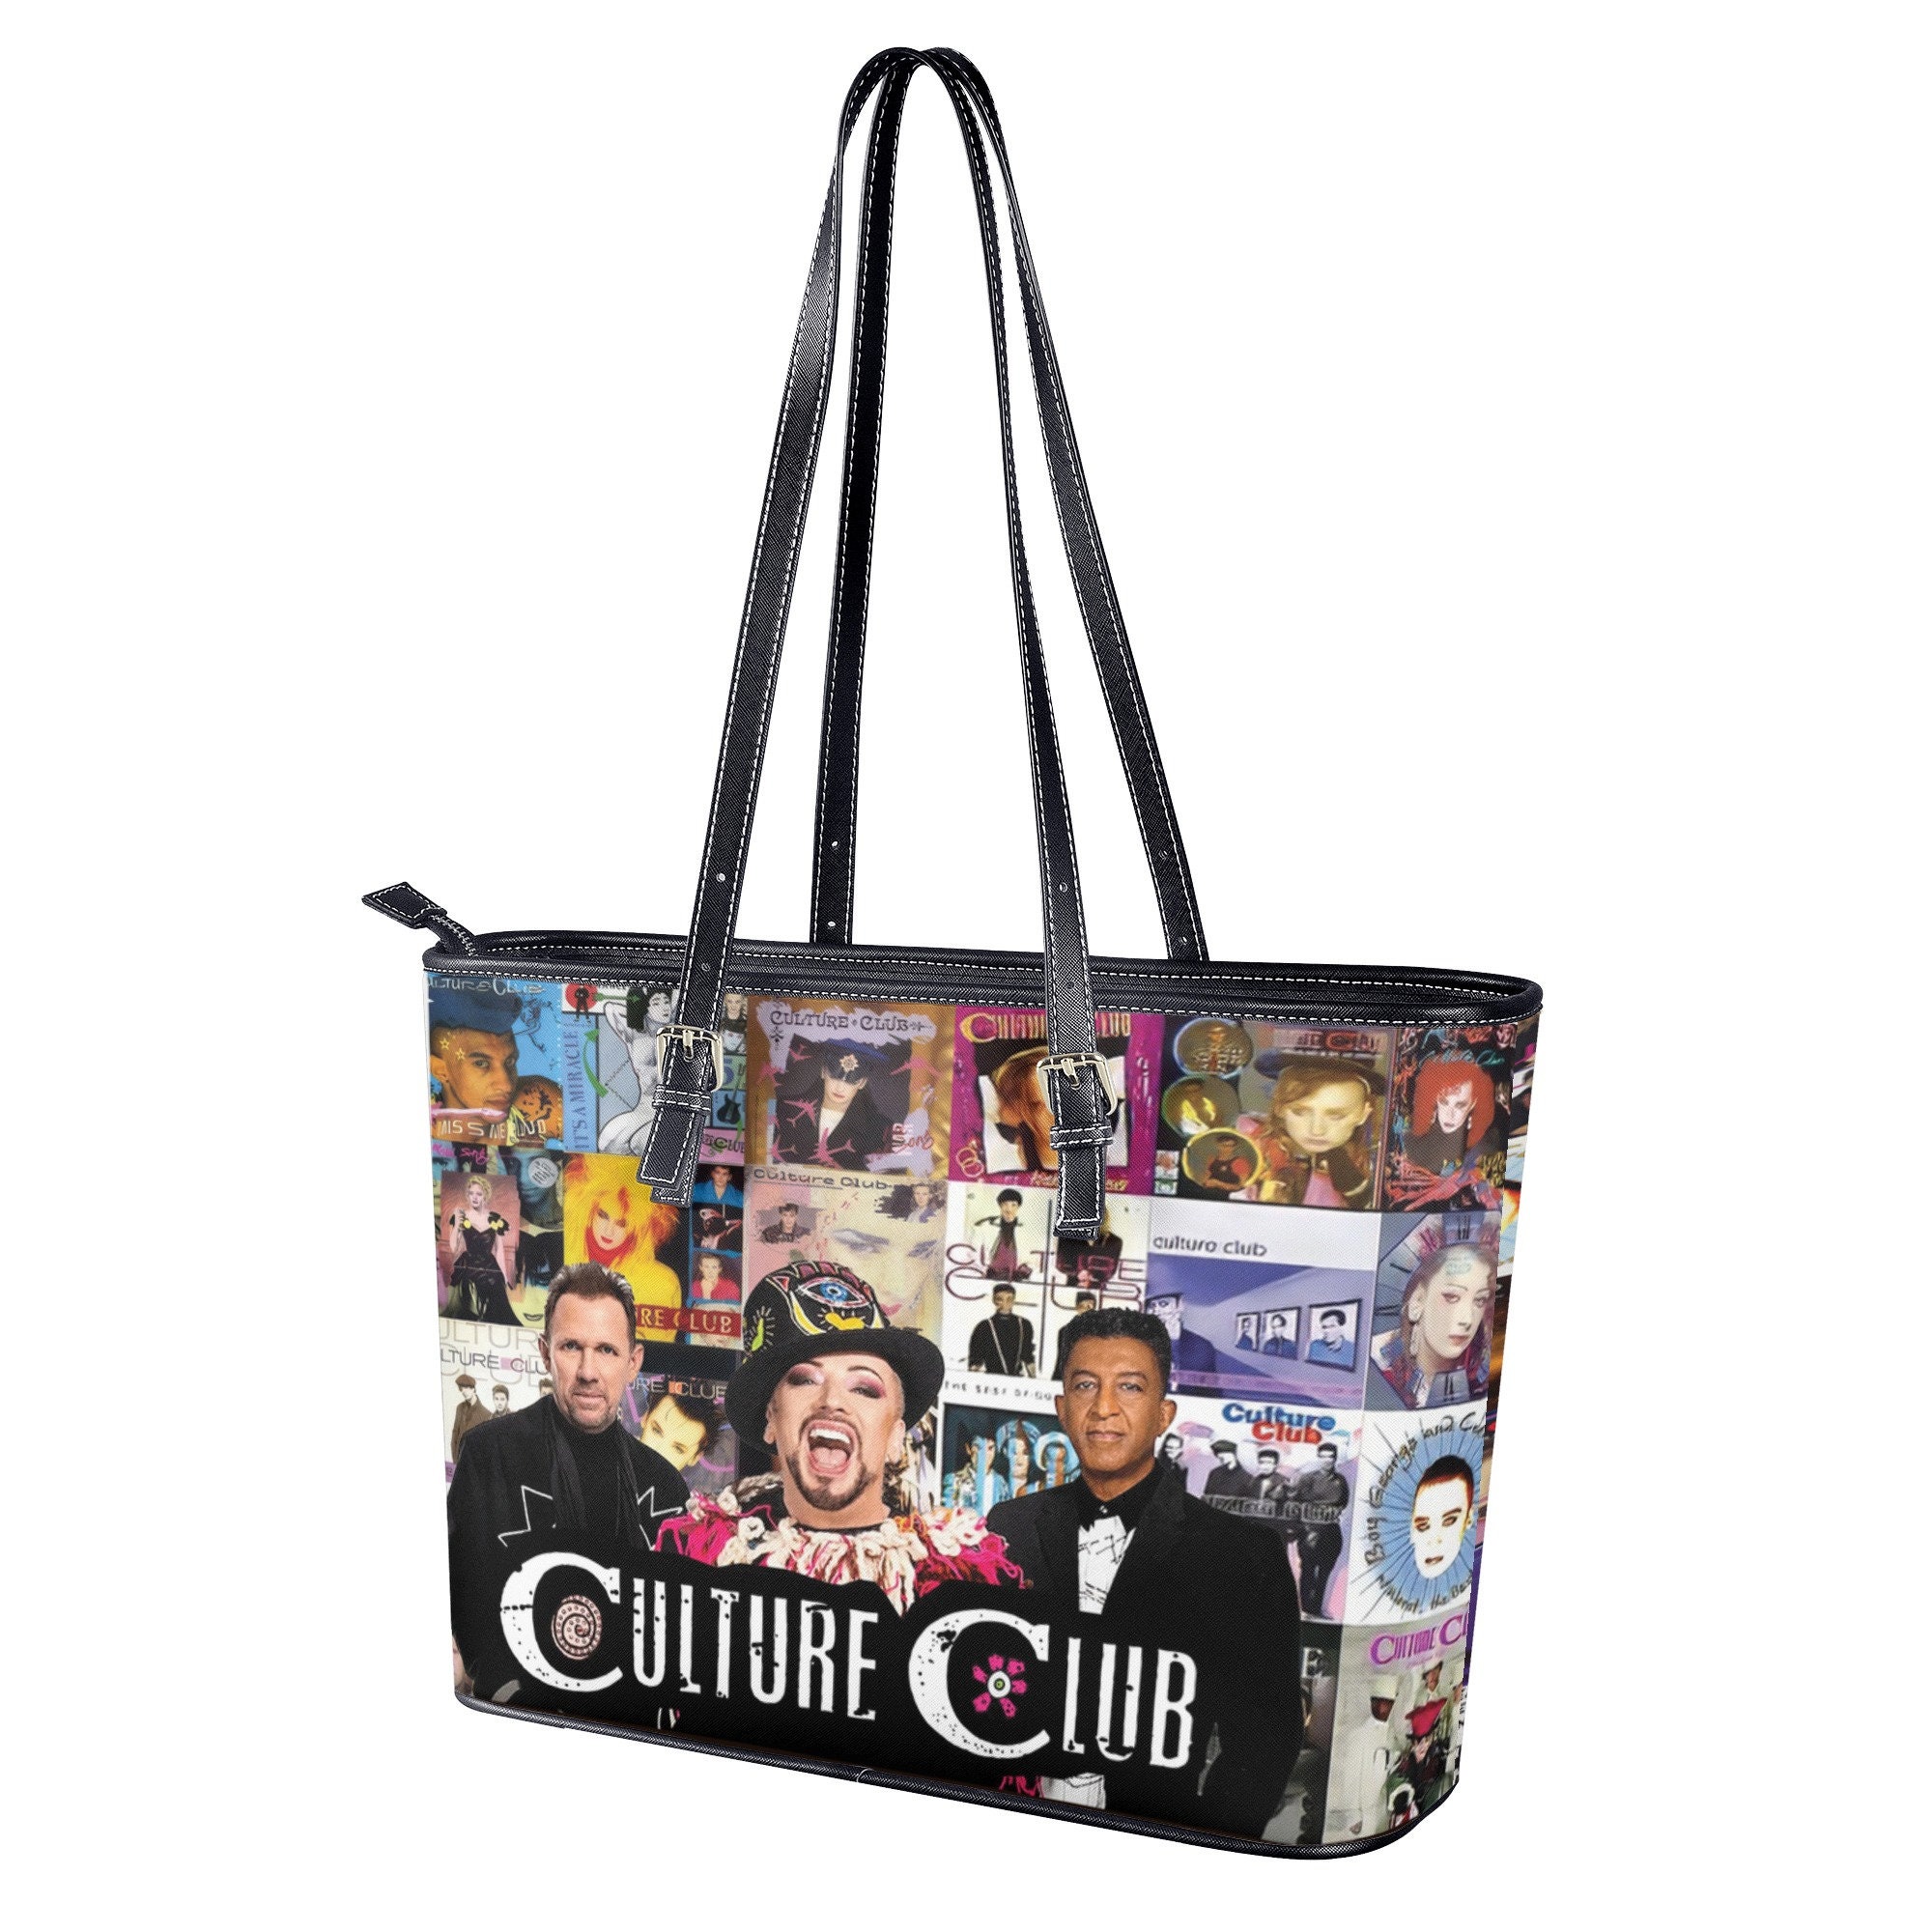 Boy George Culture Club Women Leather Handbag, Travel handbag